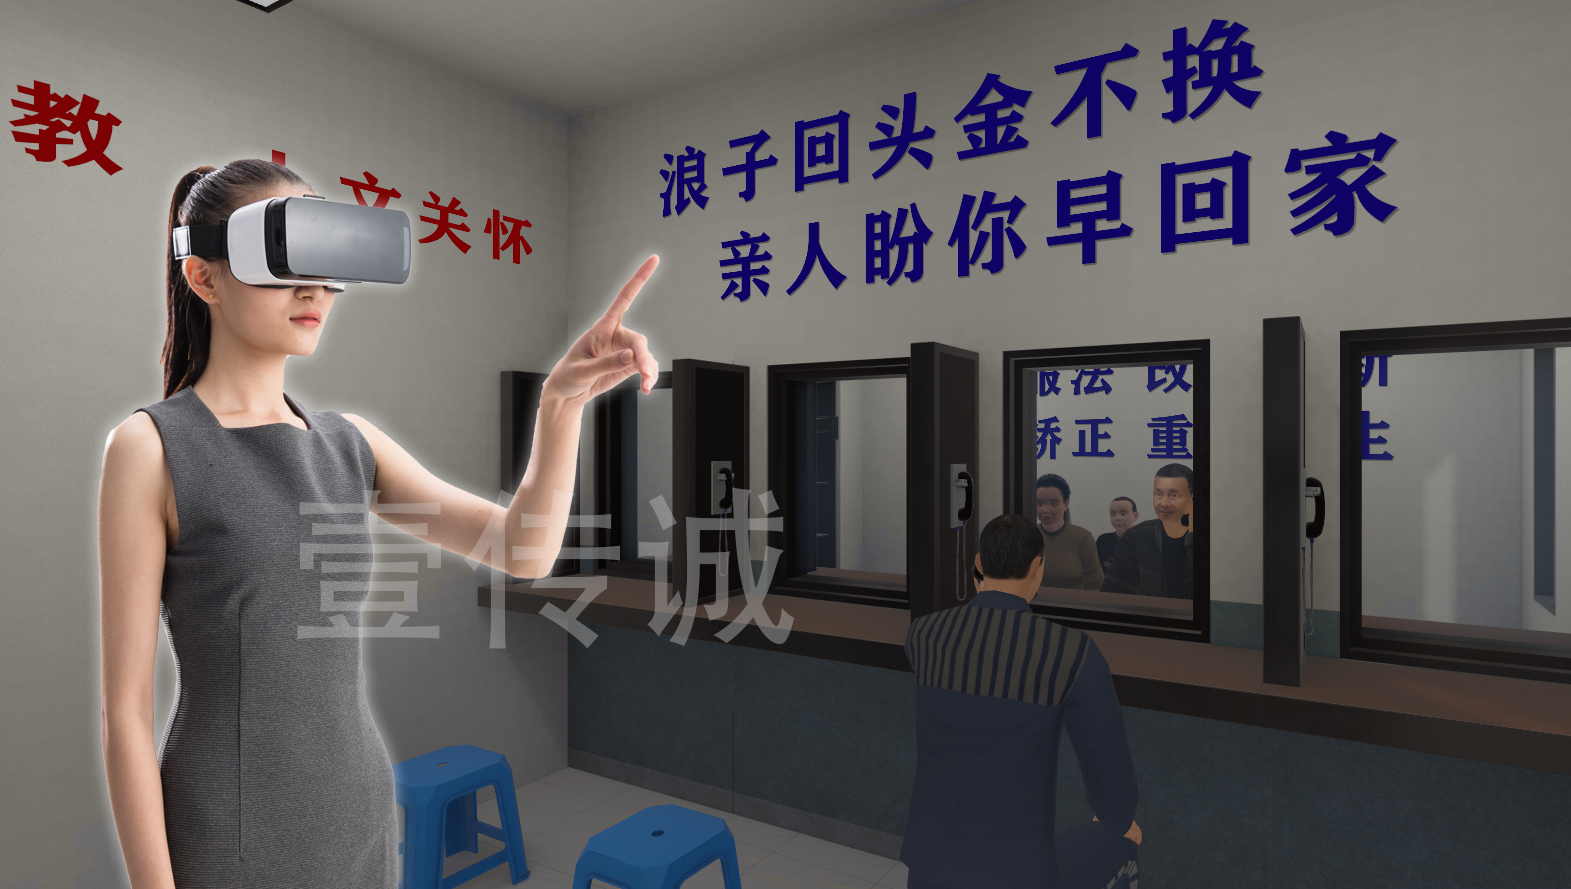 VR监狱生活模拟体验